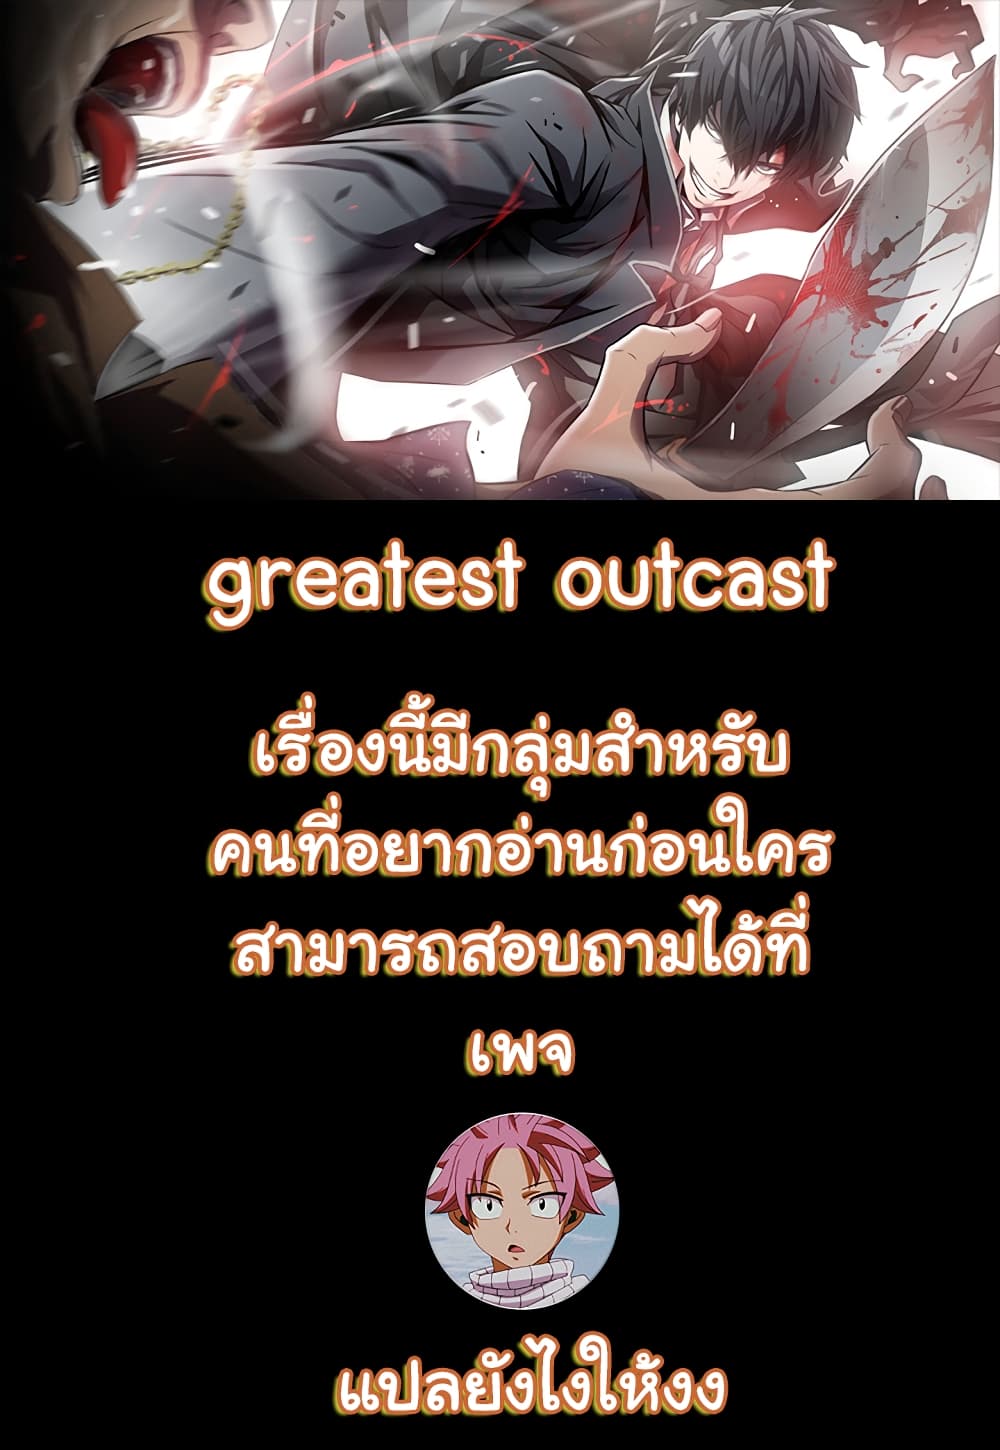 Greatest Outcast 5 (1)